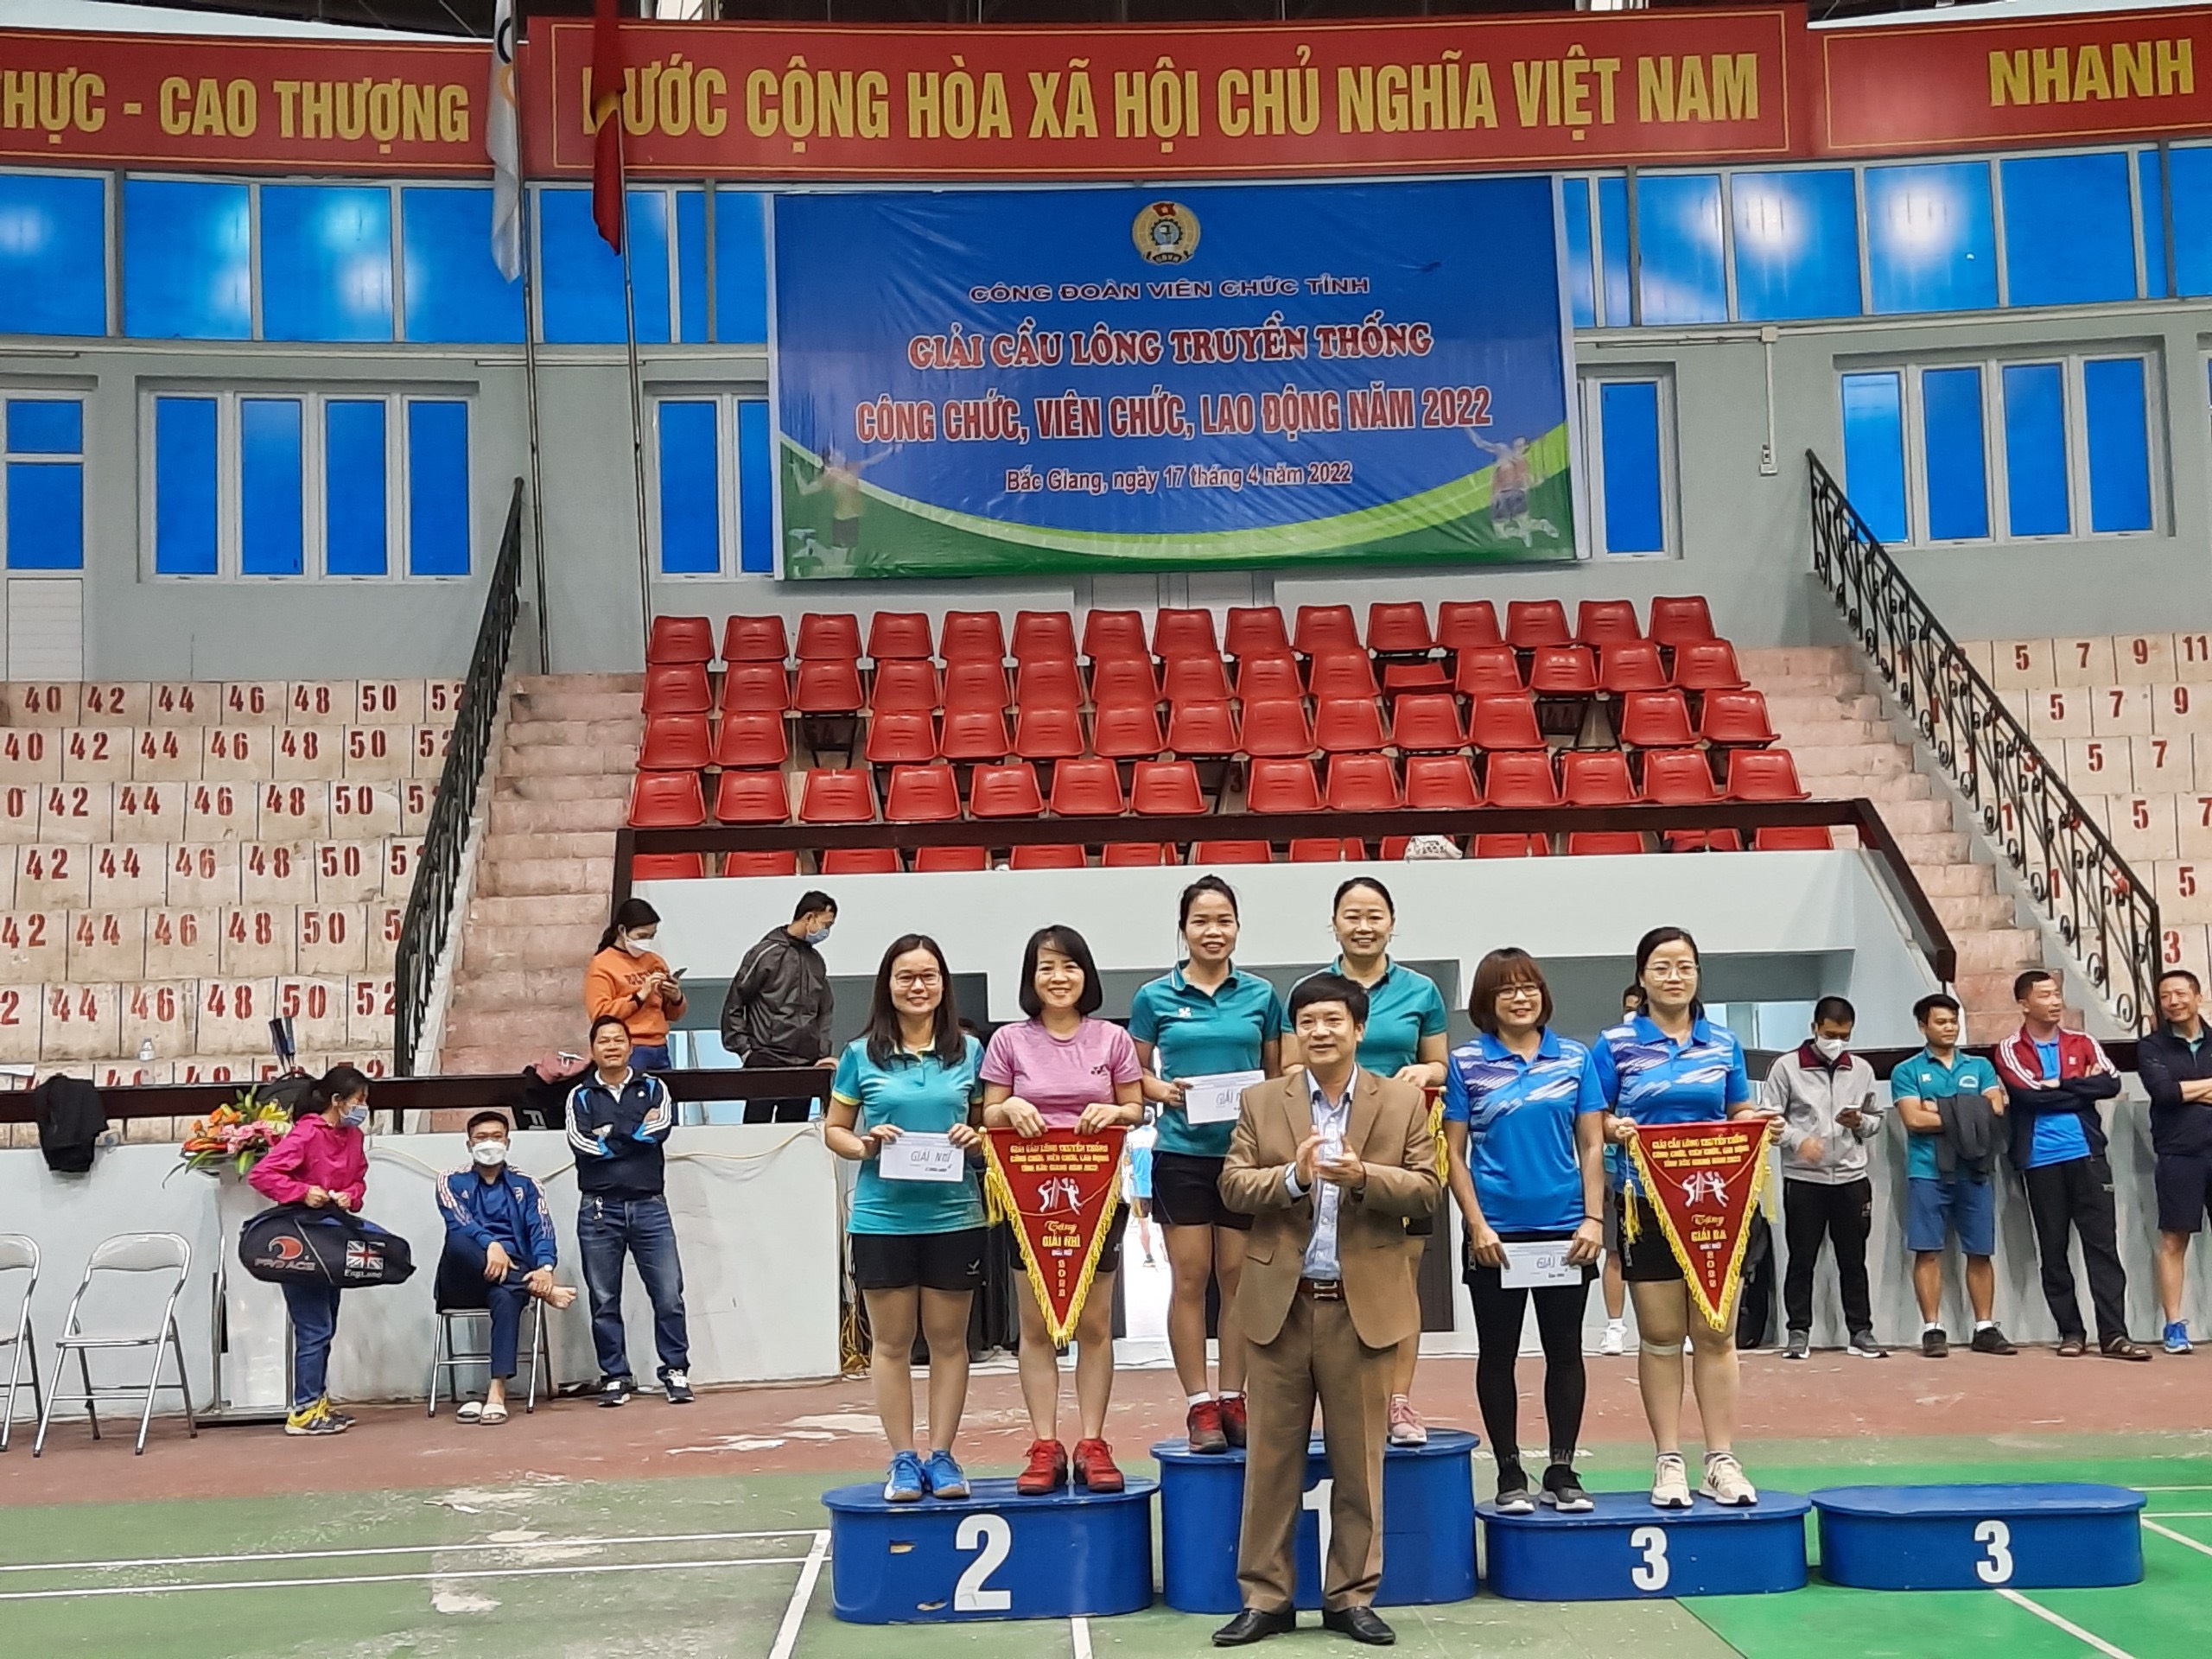 Công đoàn Cục THADS tỉnh Bắc Giang giành giải Nhì Giải cầu lông truyền thống công chức, viên chức, lao động năm 2022